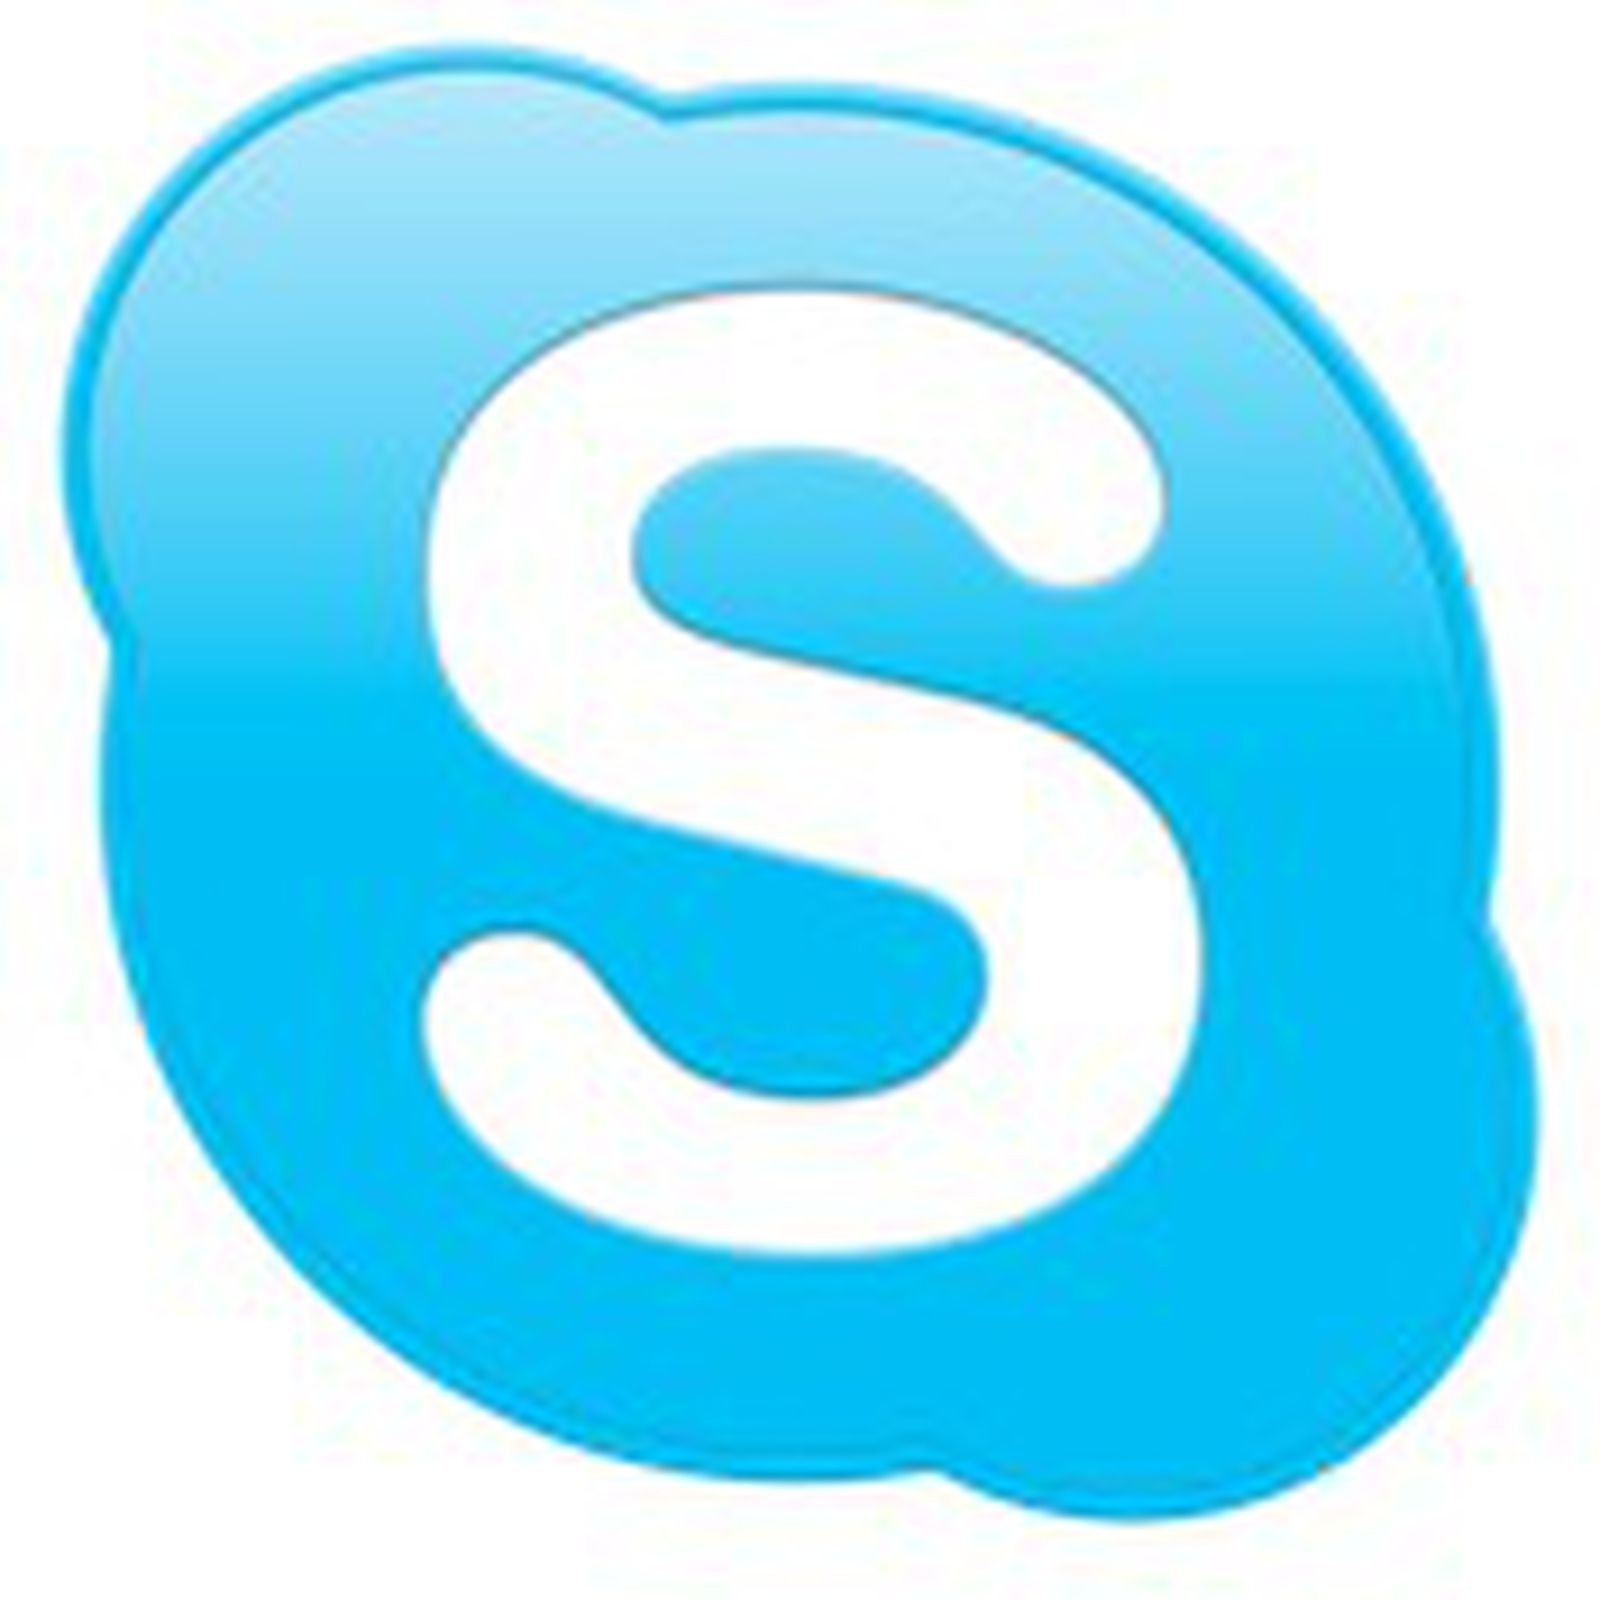 skype mac 10.7.5